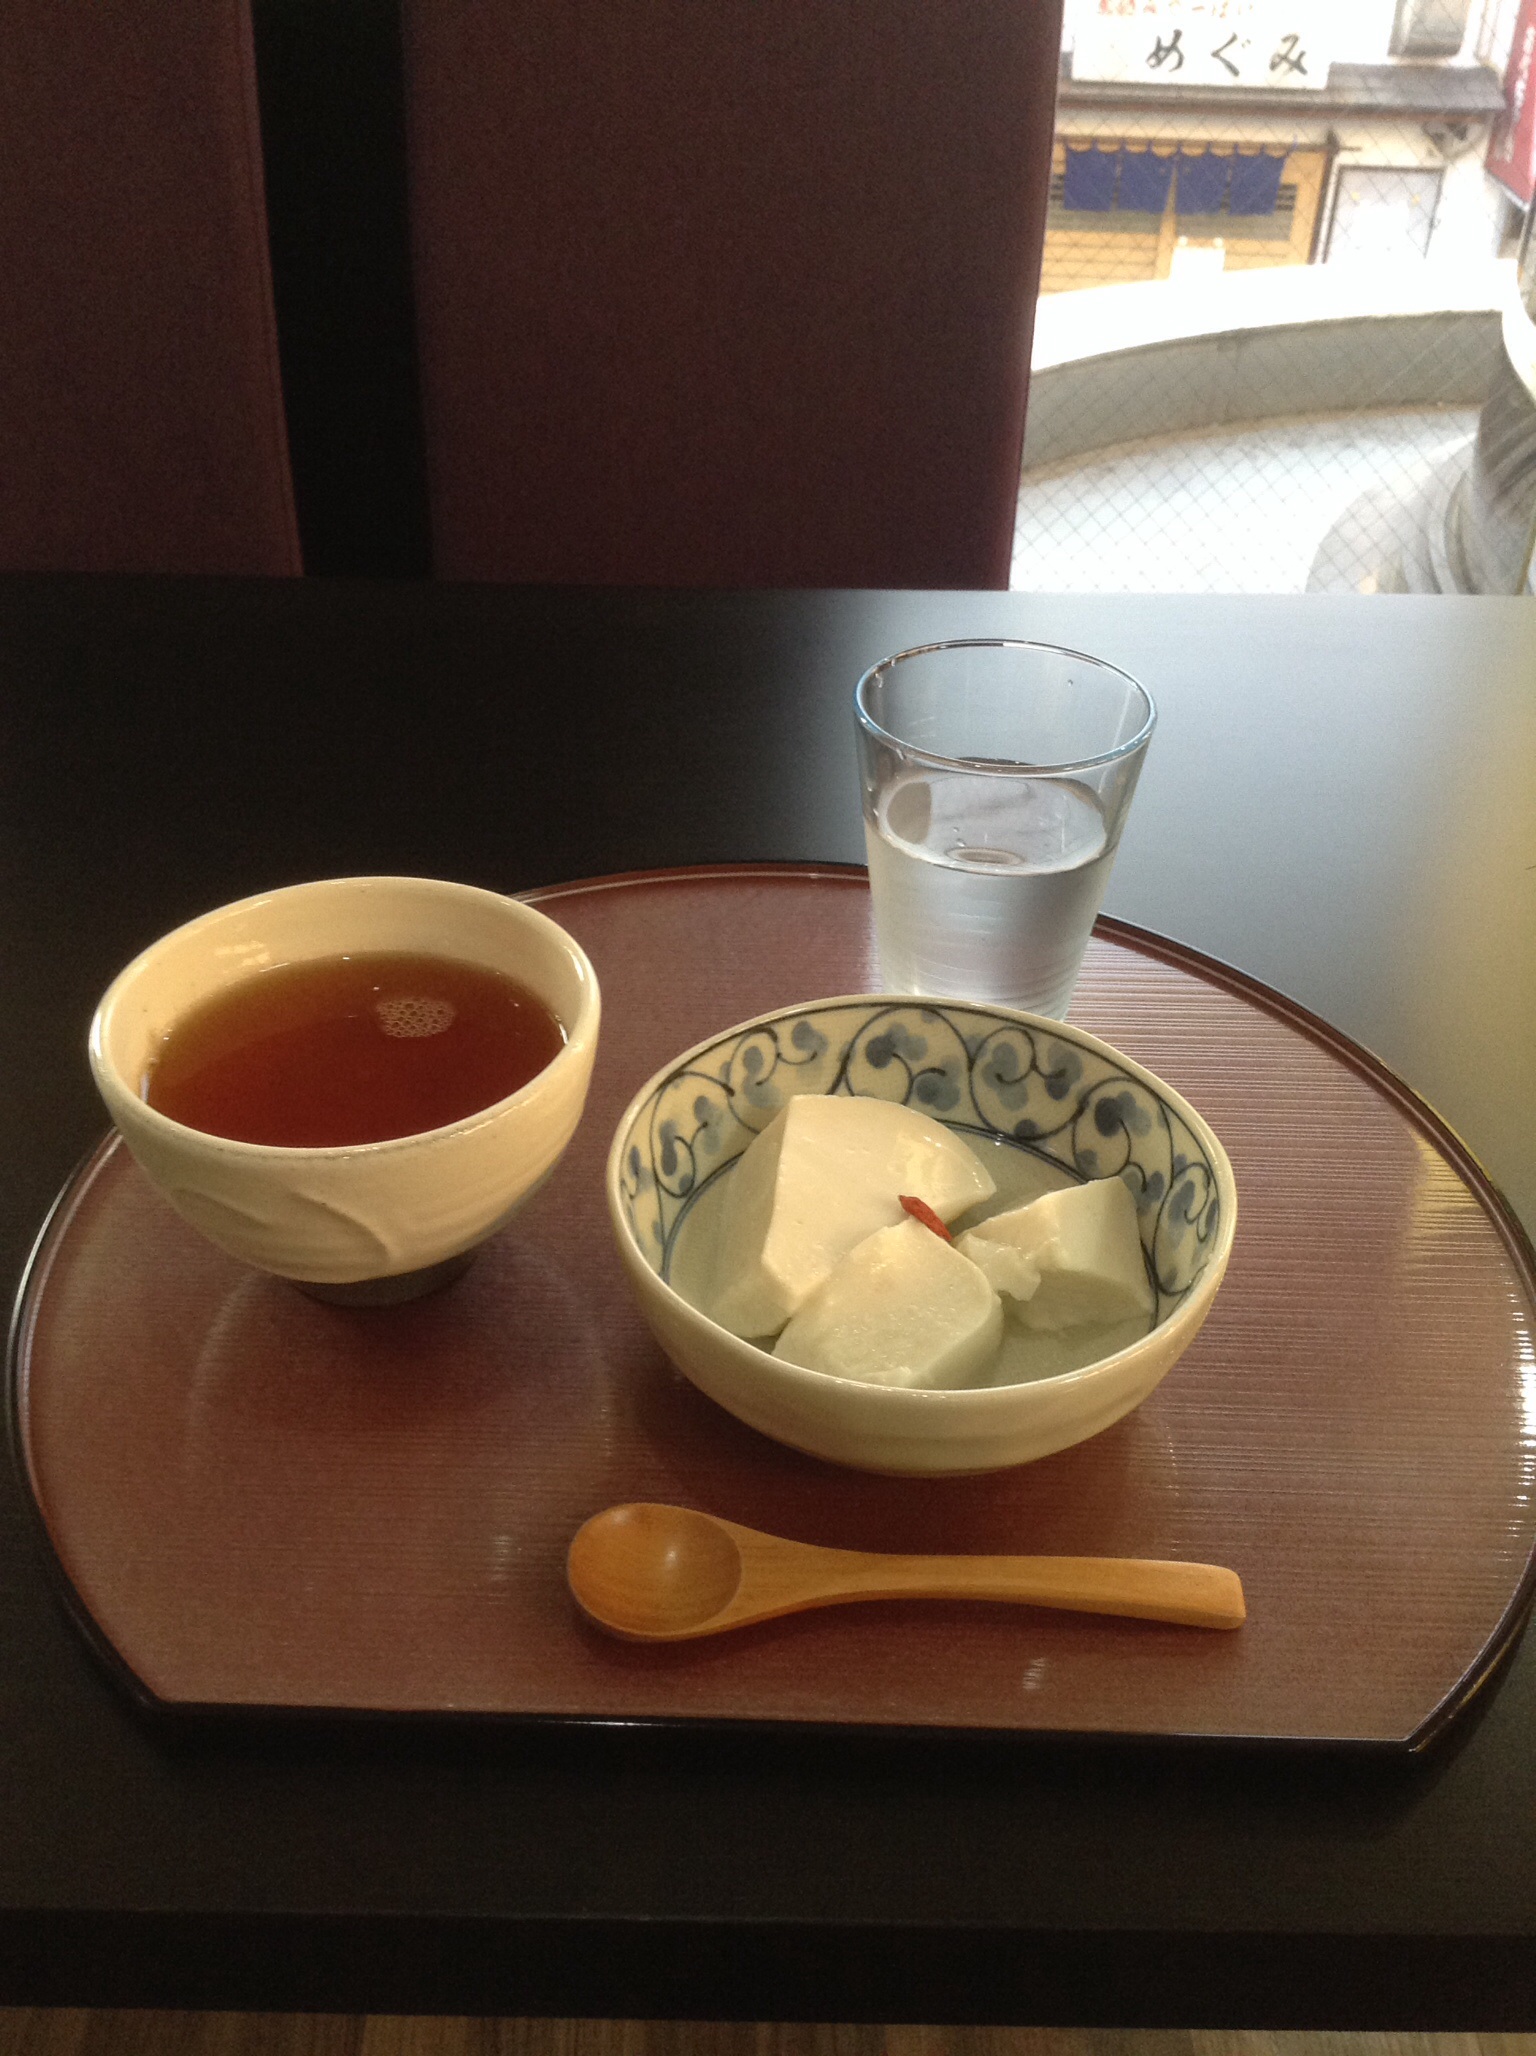 近所の日本茶カフェにて。アイスプーアル茶と白ゴマプリン